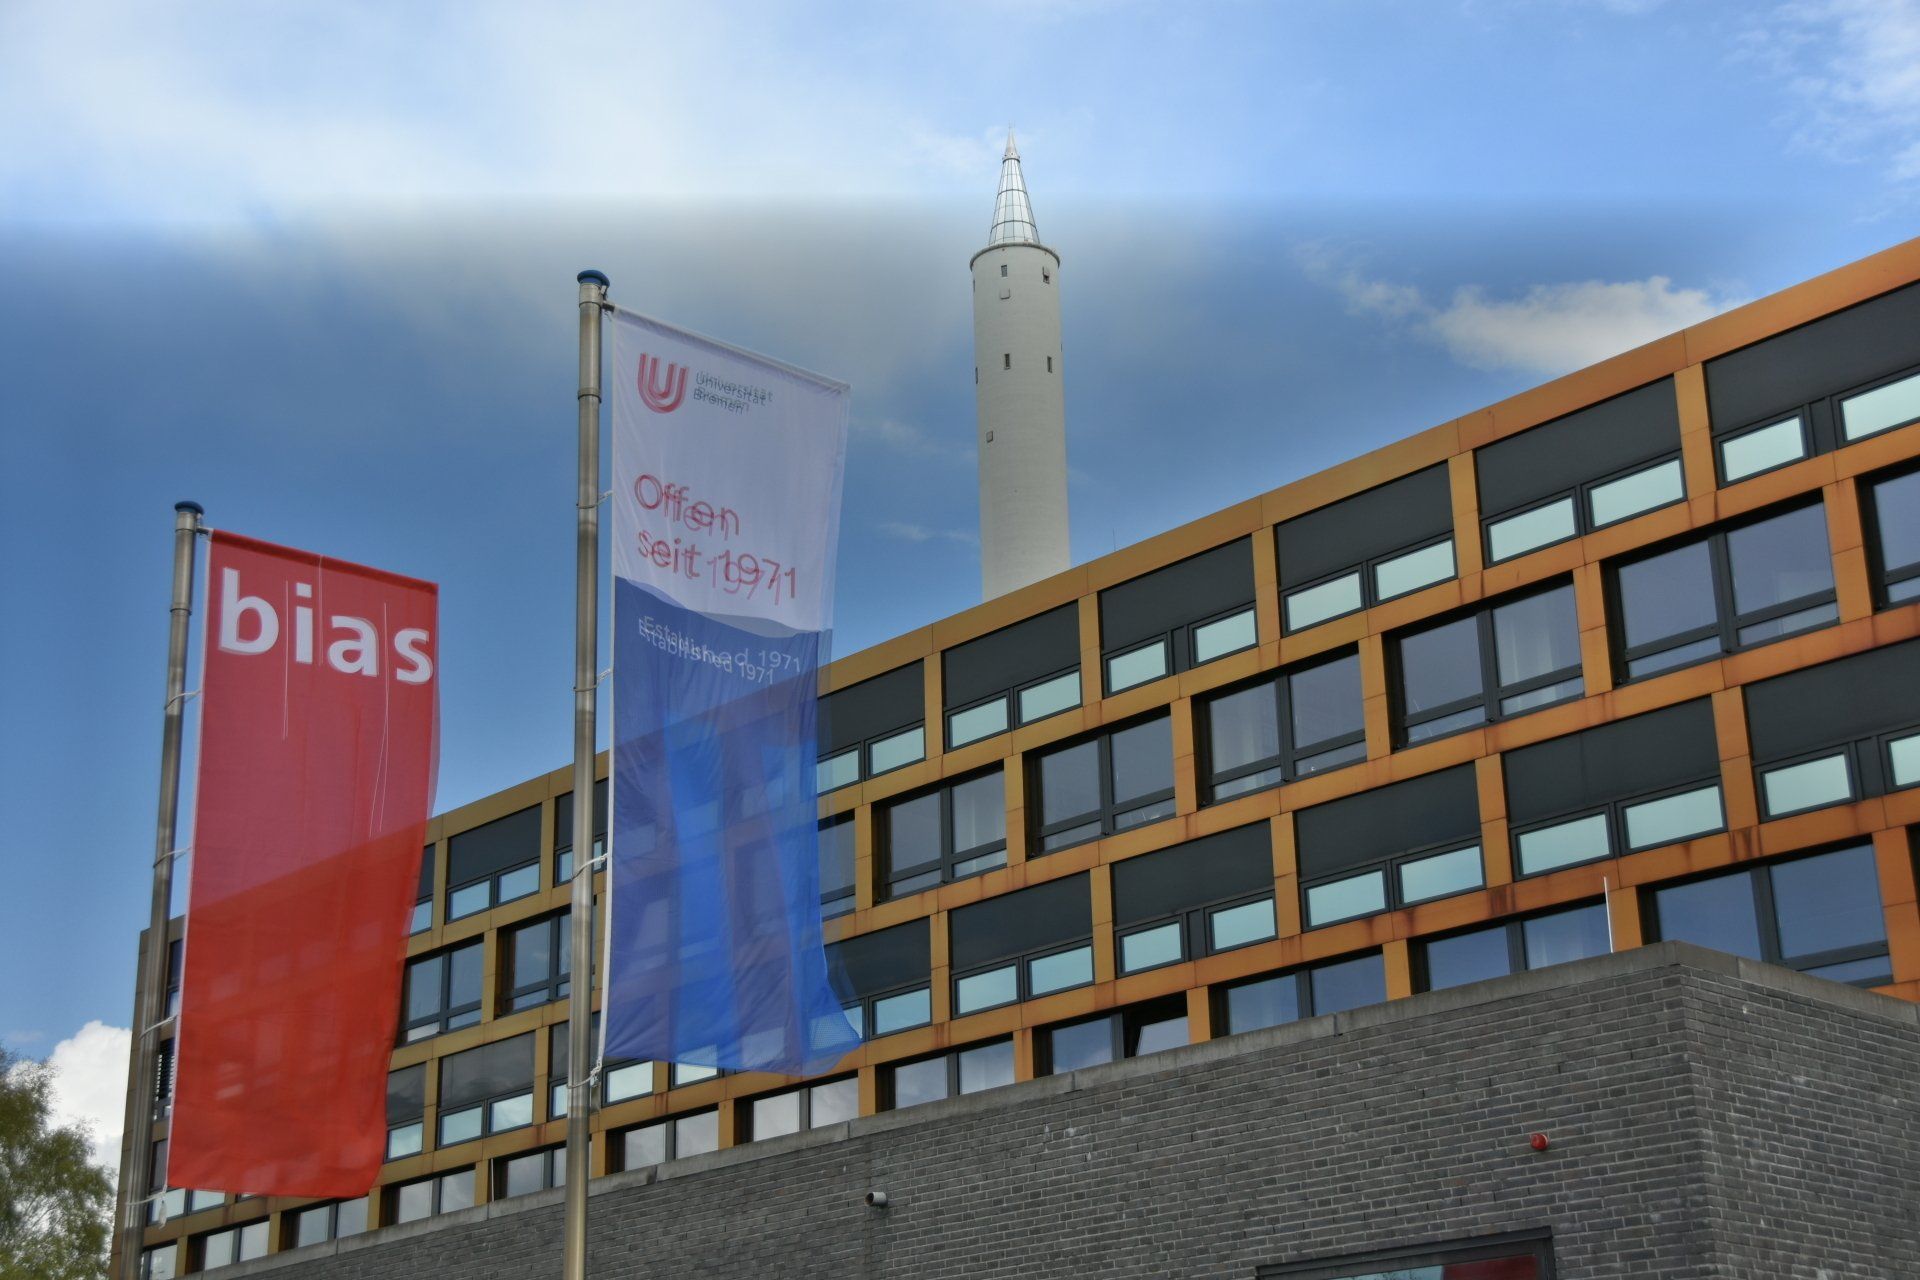 Gebäude BIAS mit Flaggen im Vordergrund